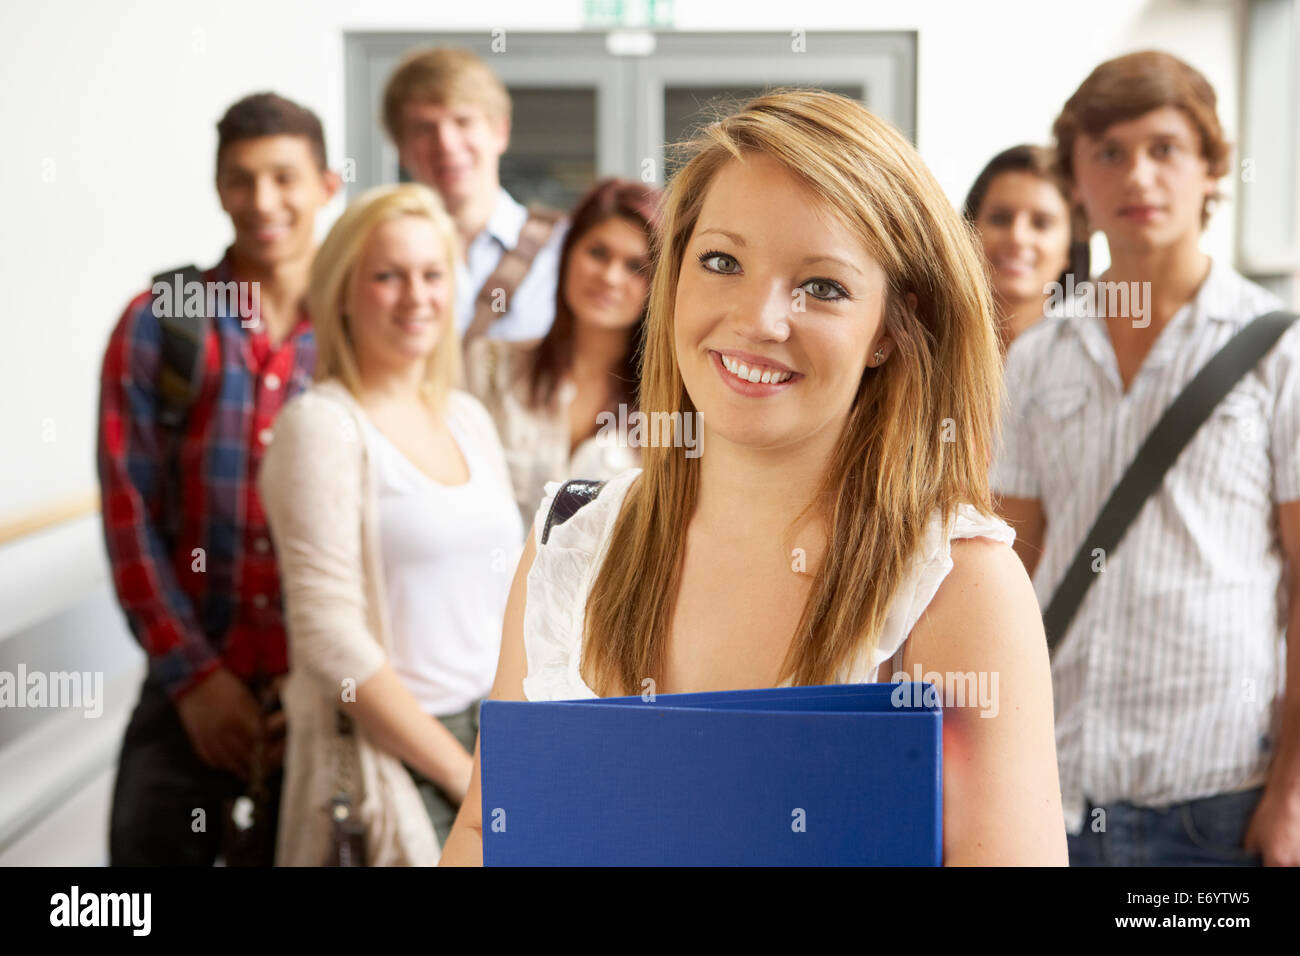 Student blonde. Студенты улыбаются. Фото улыбающихся студентов. Колледж фотографа. Картинки улыбающихся студентов России.